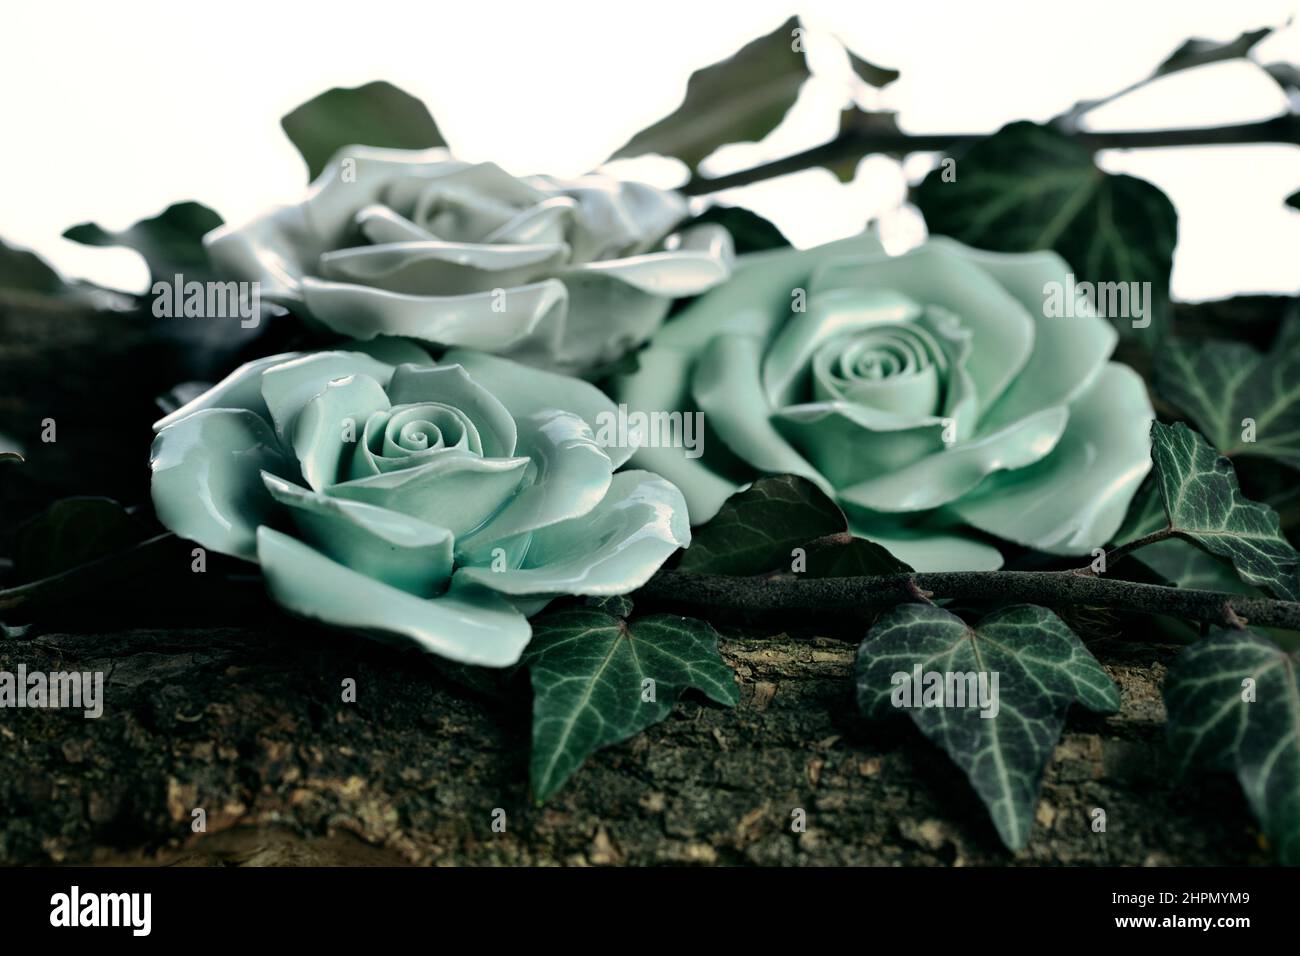 Fiore eterno immagini e fotografie stock ad alta risoluzione - Alamy